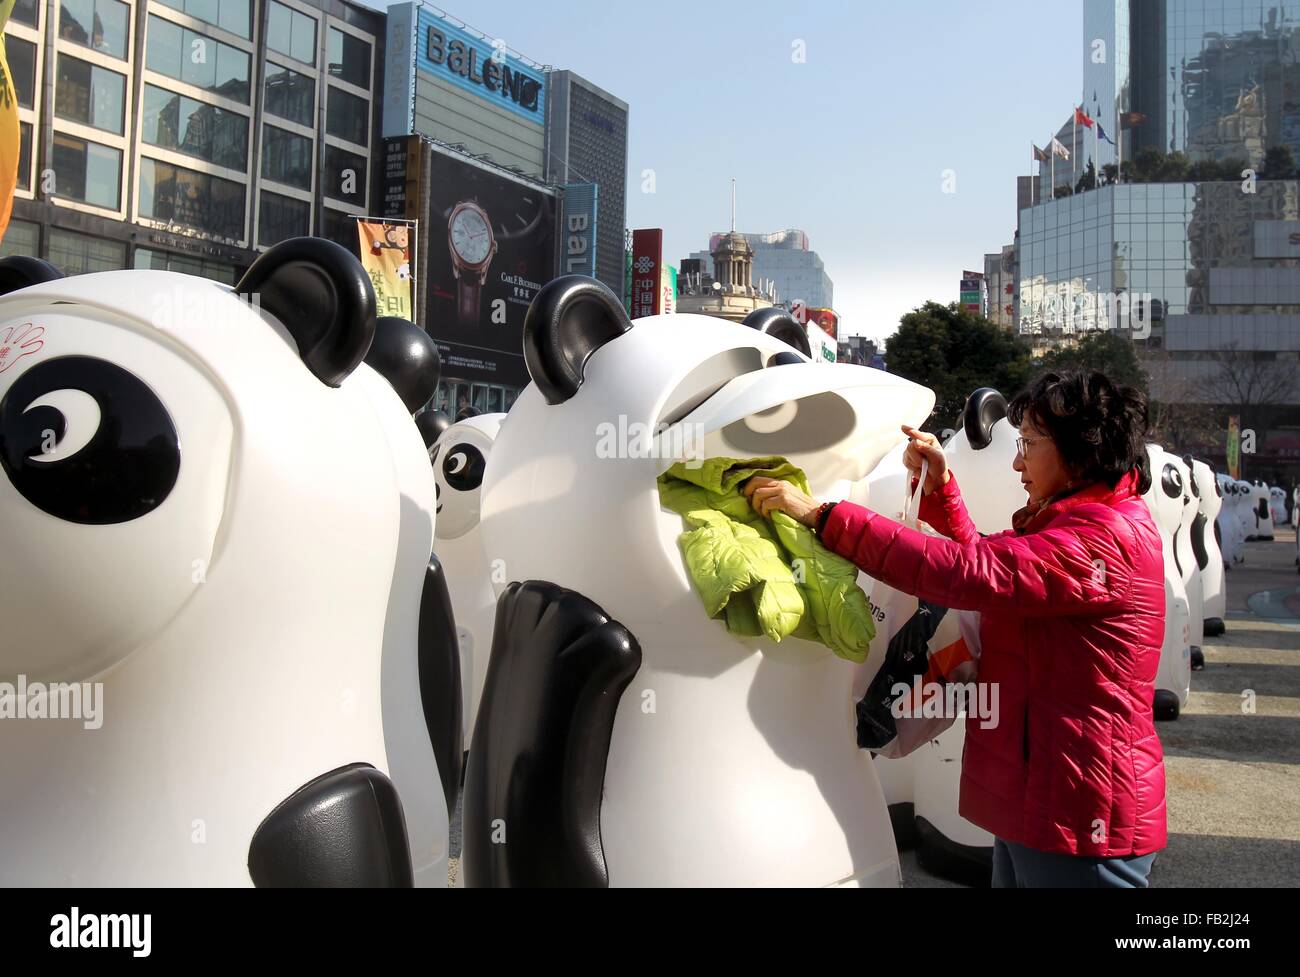 China. 8 ene, 2016. La "alimentar" de panda-styled de contenedores de reciclaje con ropa vieja en Shanghai, China oriental, el 8 de enero de 2016. En total 800 contenedores de